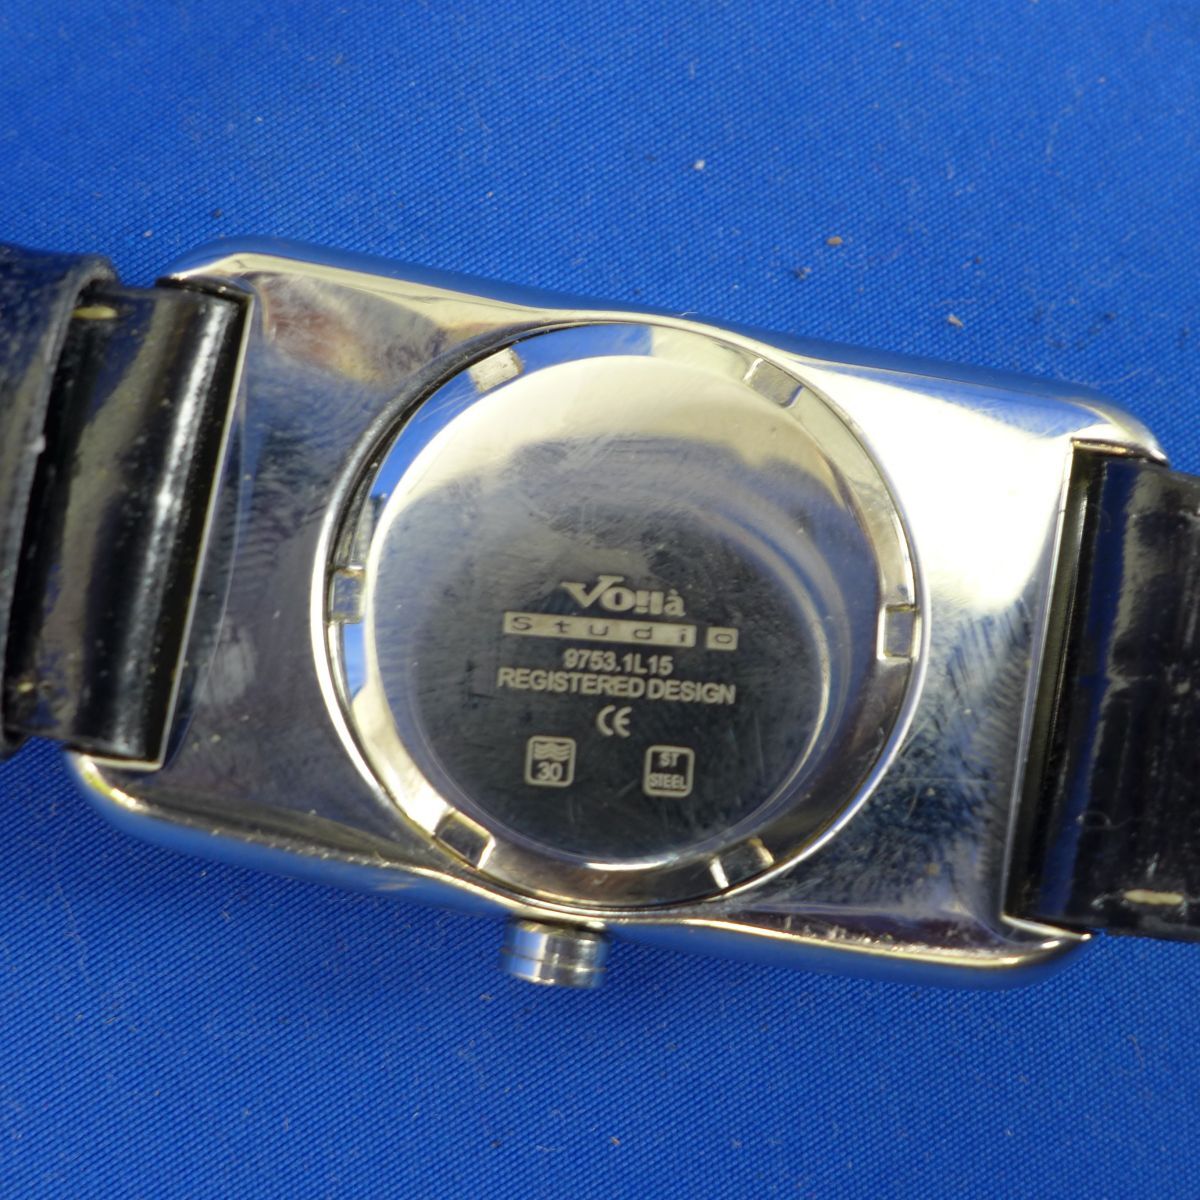 内S7524【即決】【電池入替/動作確認済】Voila ヴォアラ クオーツ腕時計 9753.1L15_画像5